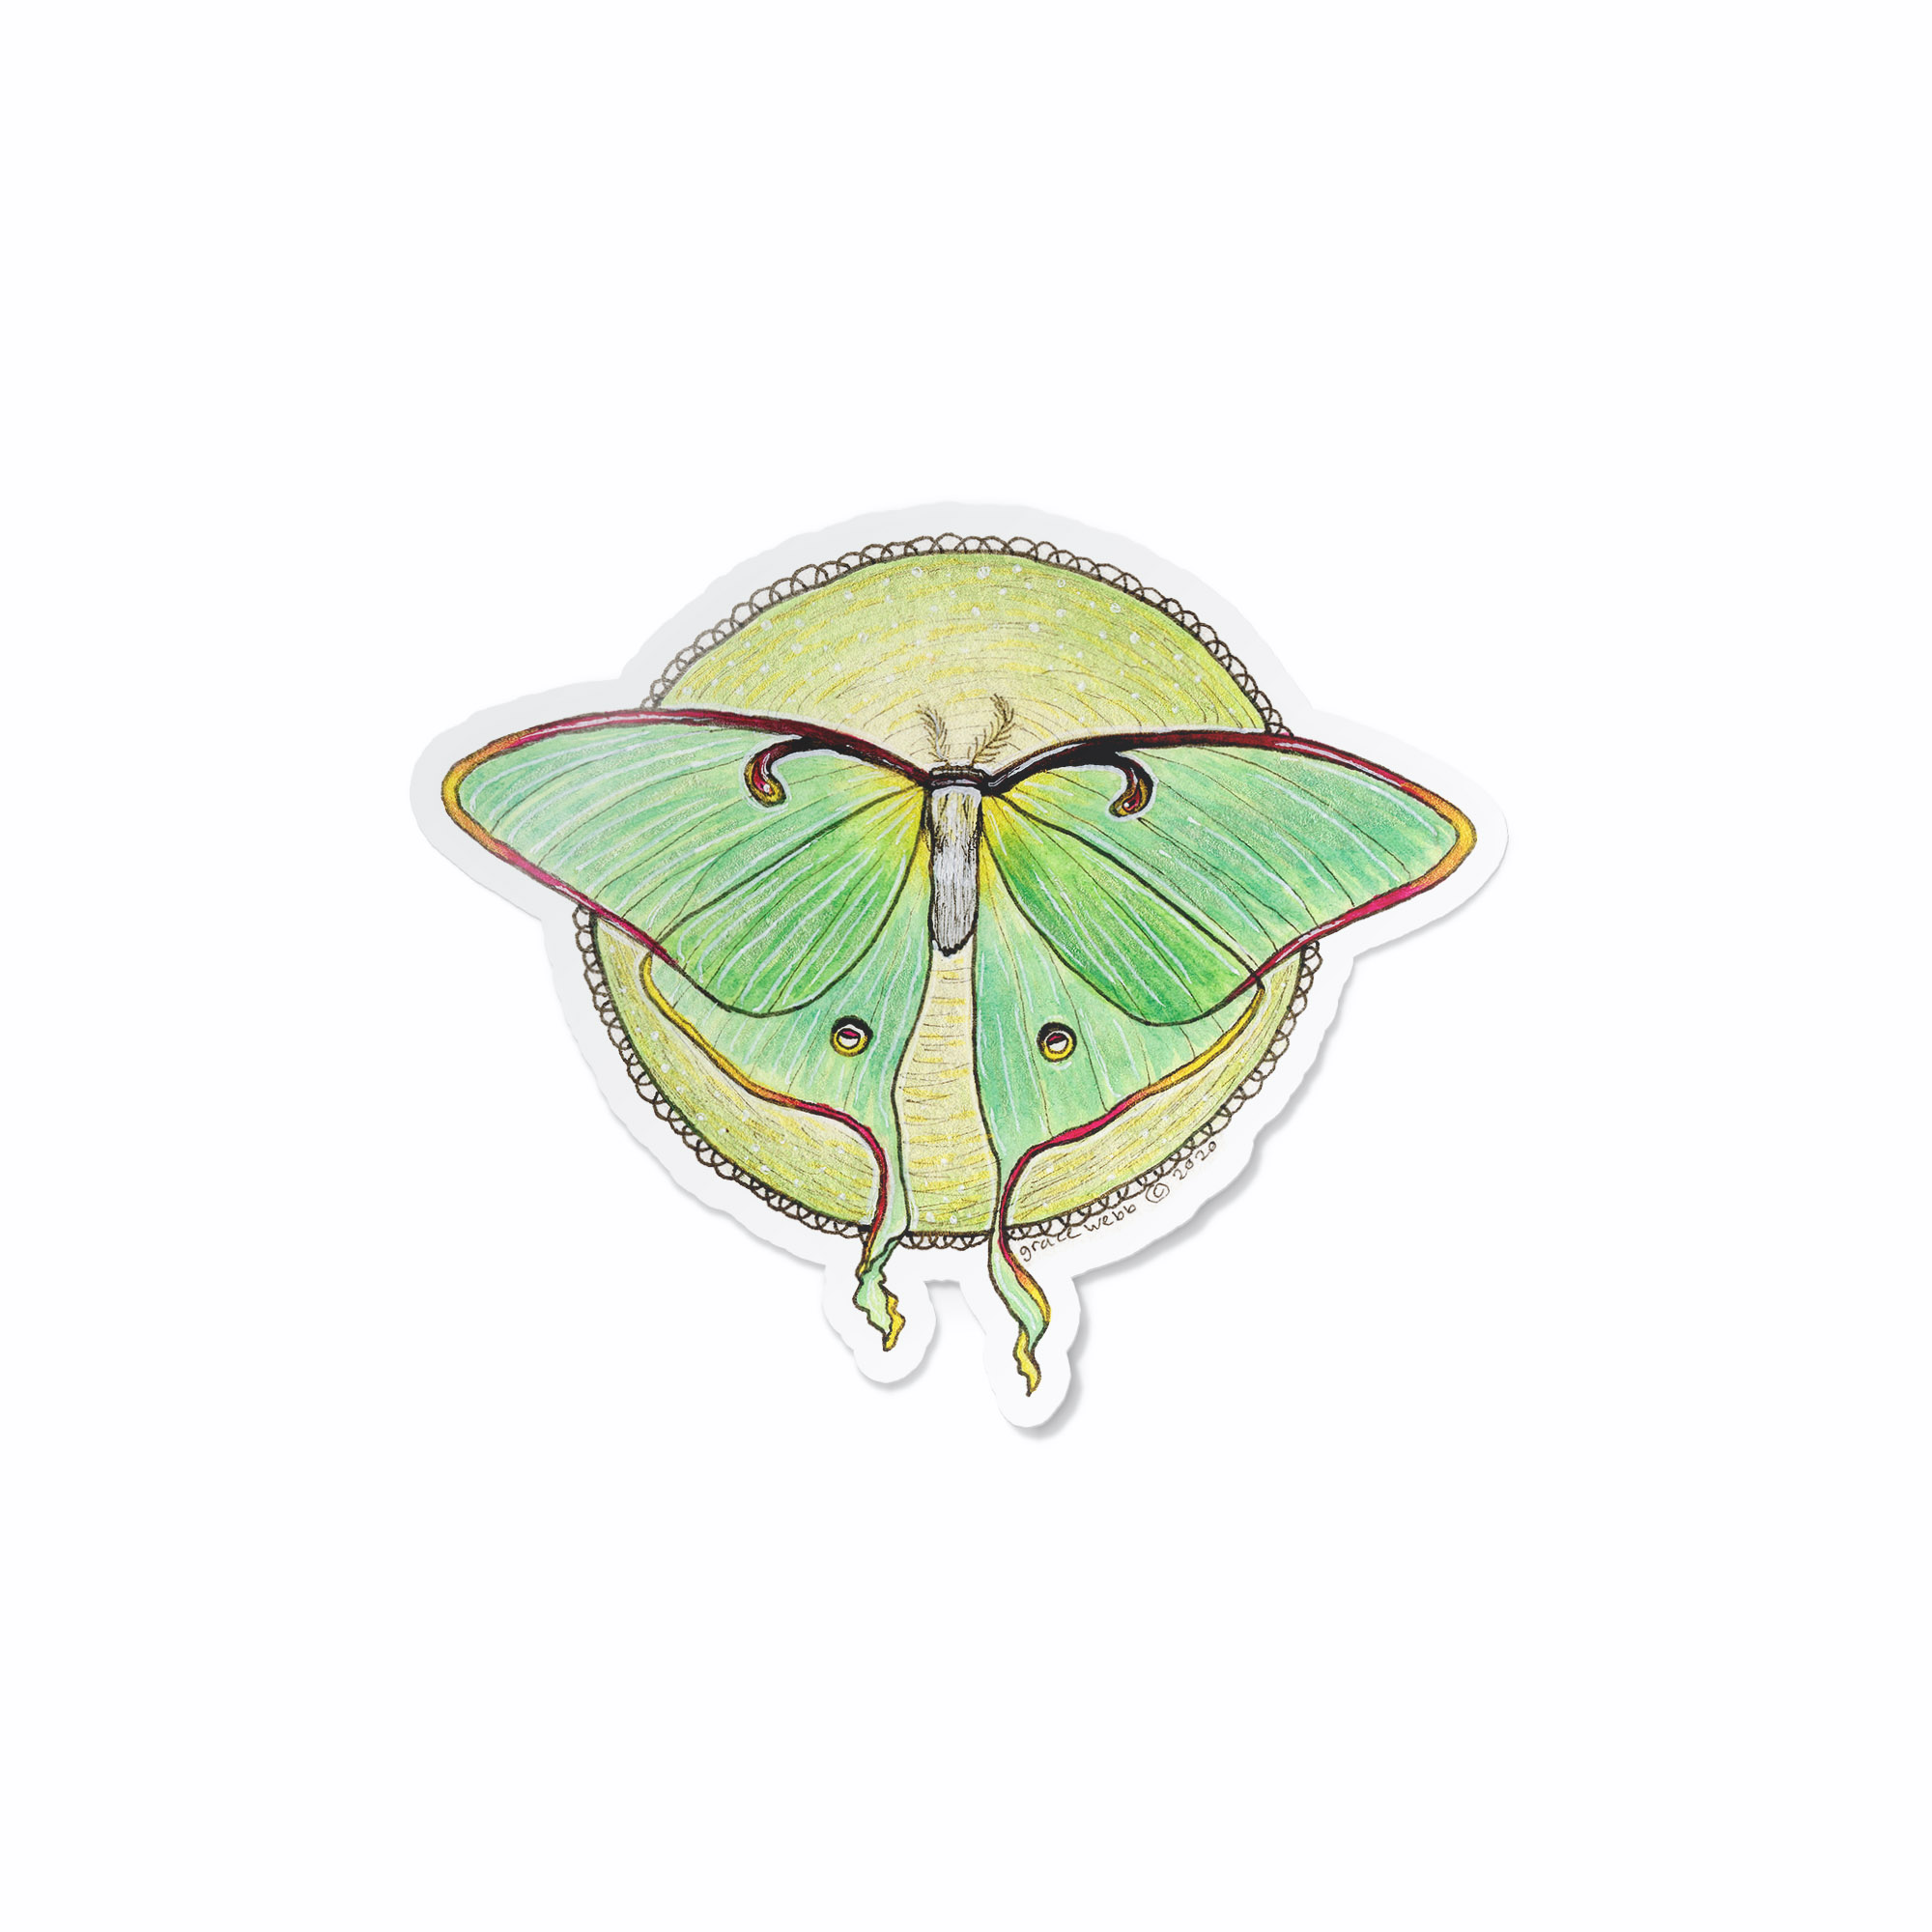 Luna Moth Sticker — Kat Weber Art